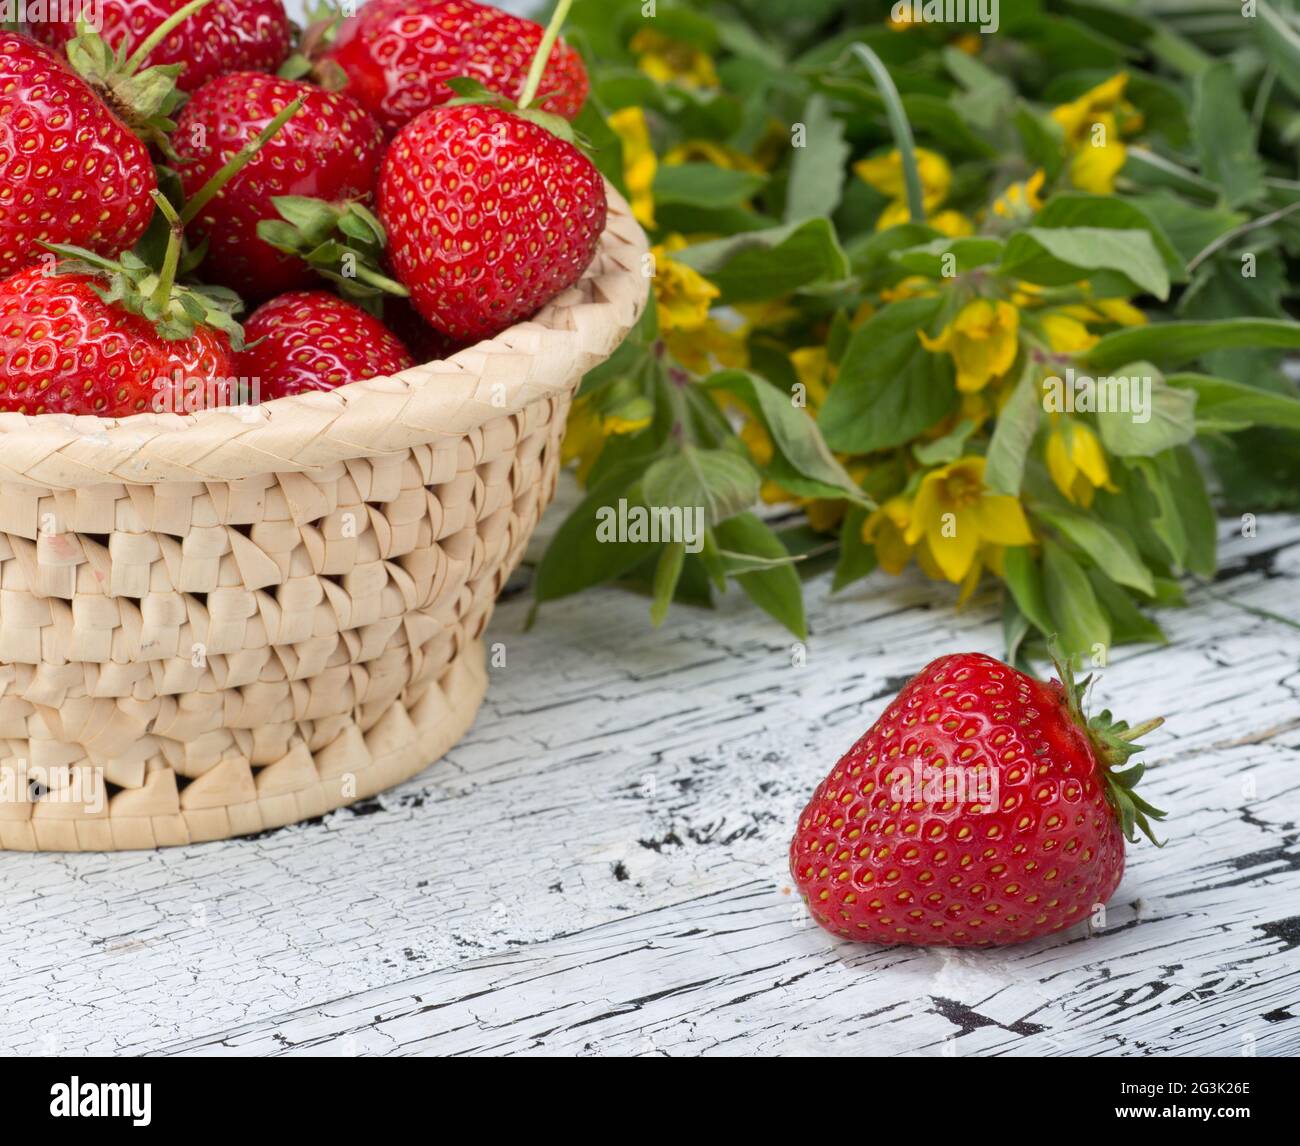 Ripe red strawberries Stock Photo